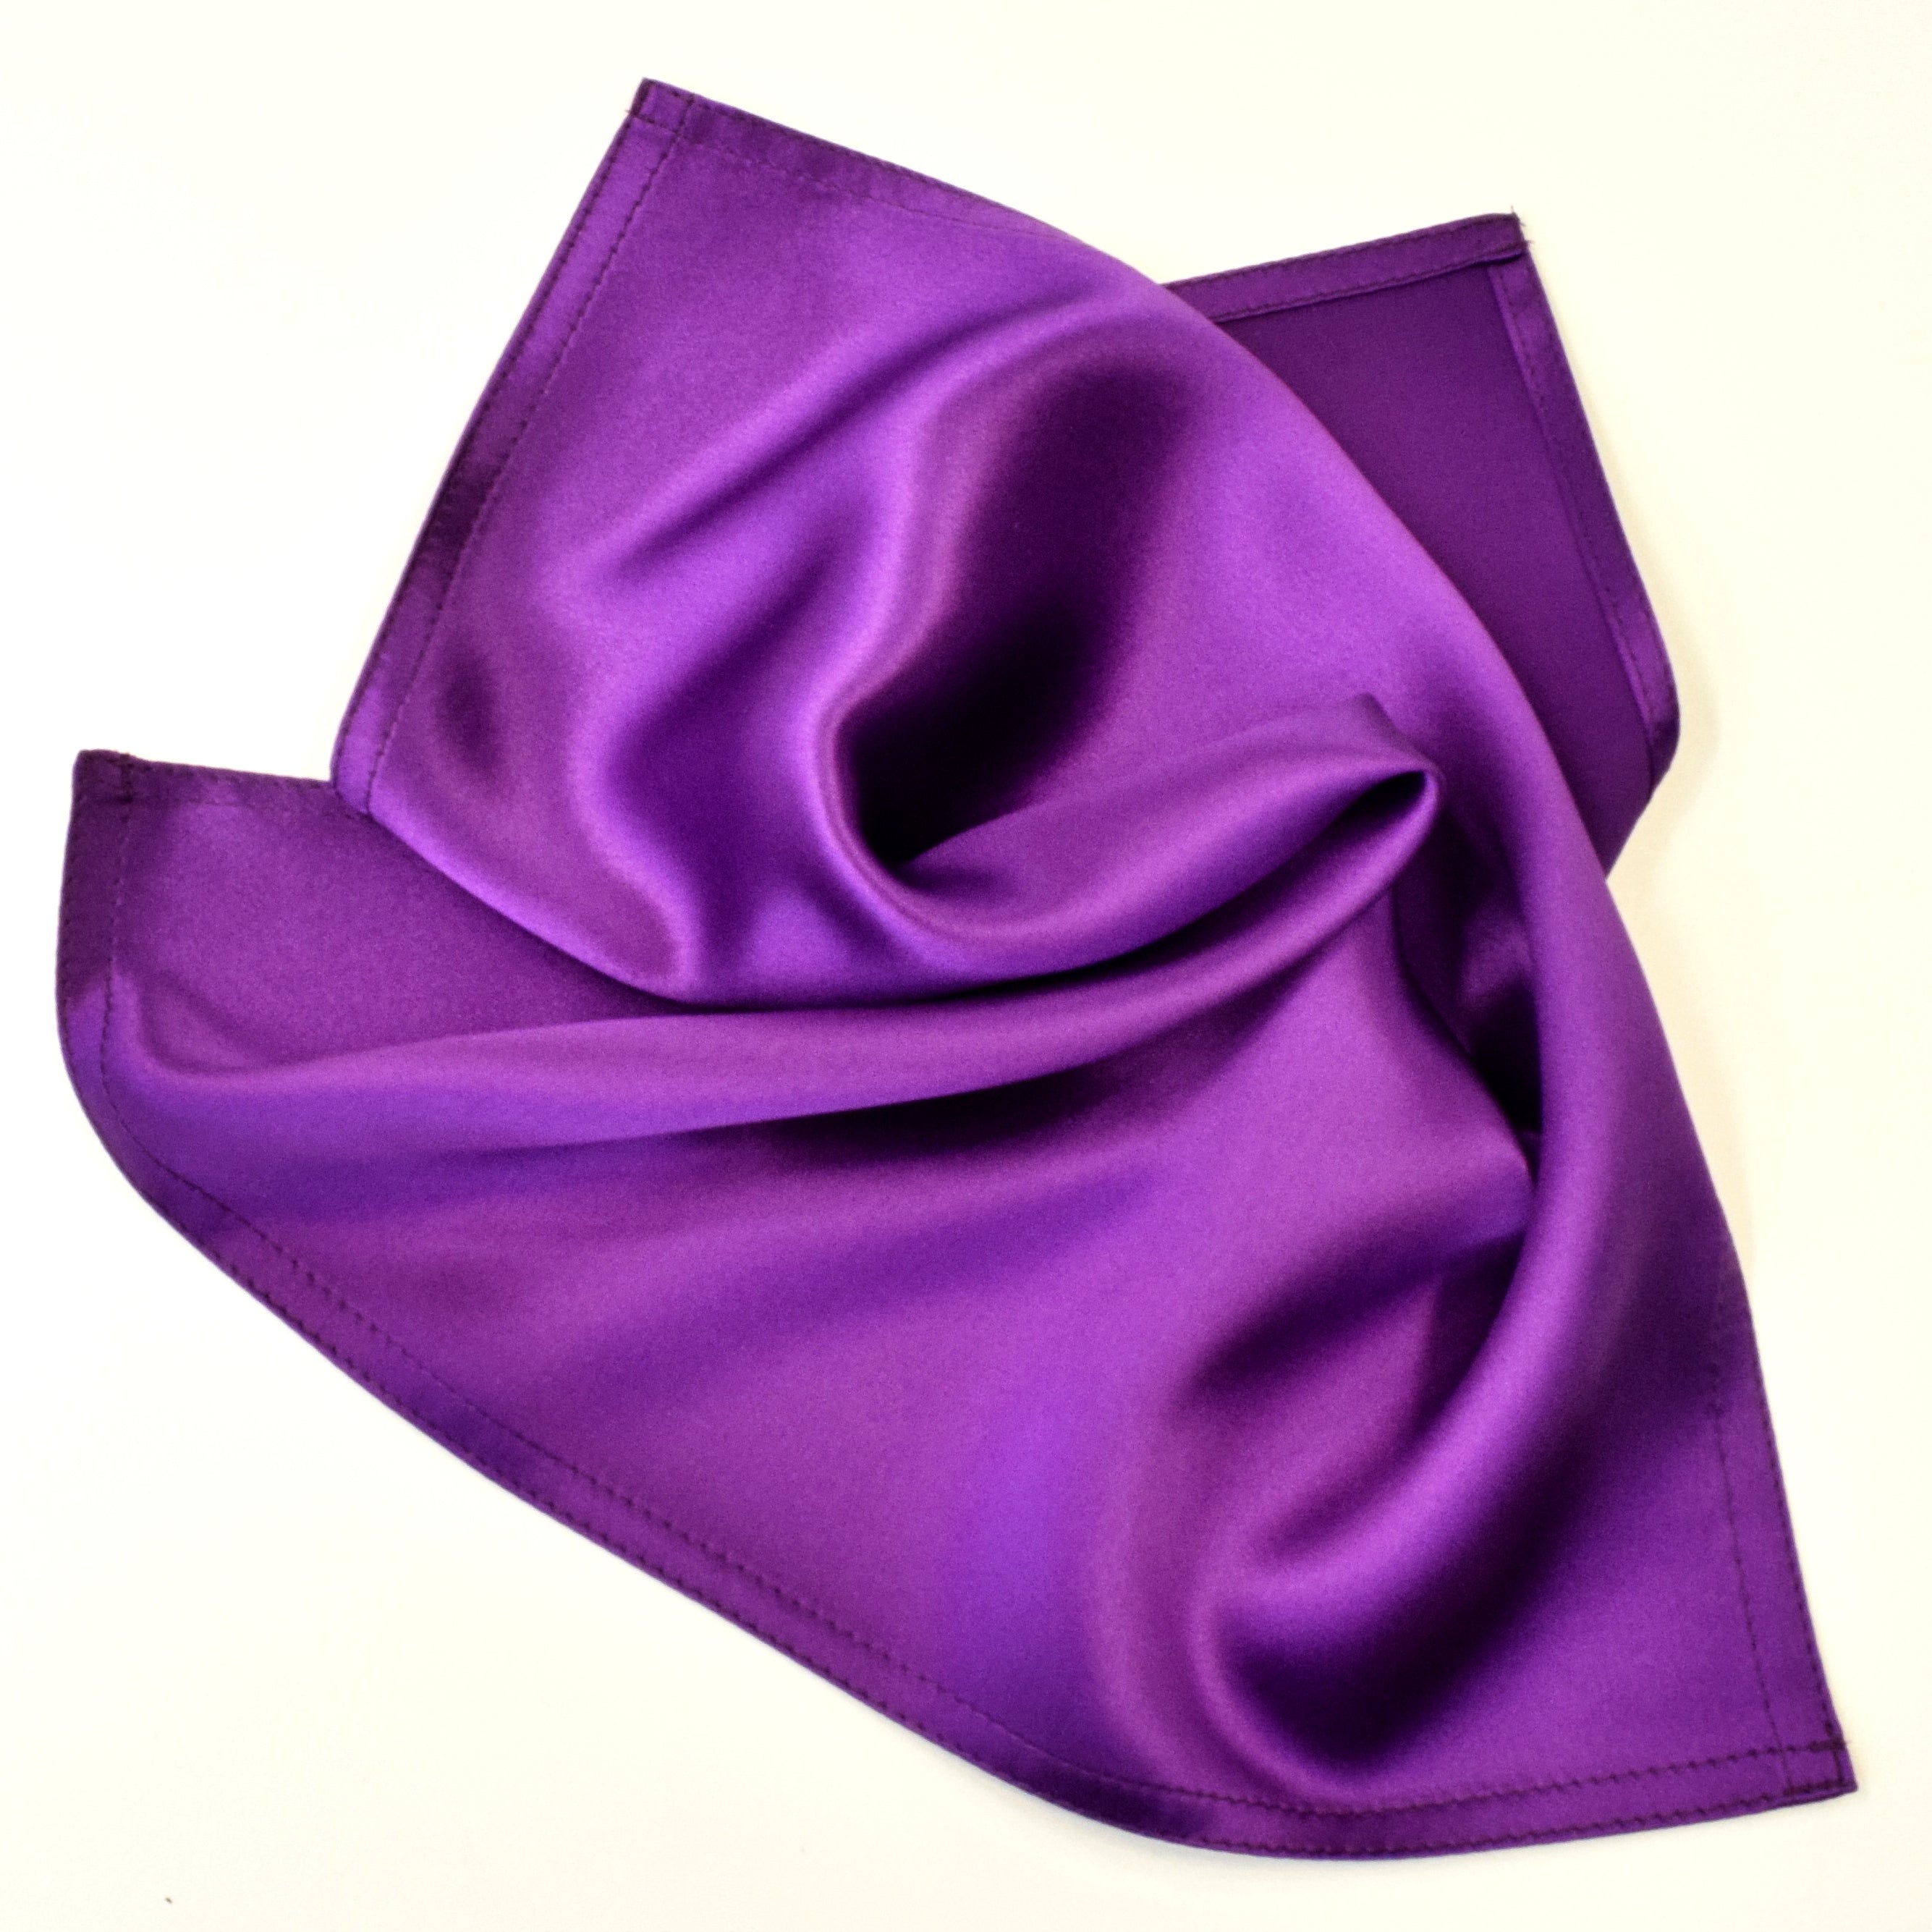 Pure silk purple satin pocket square for men's fashion handmade by Lynne Kiel